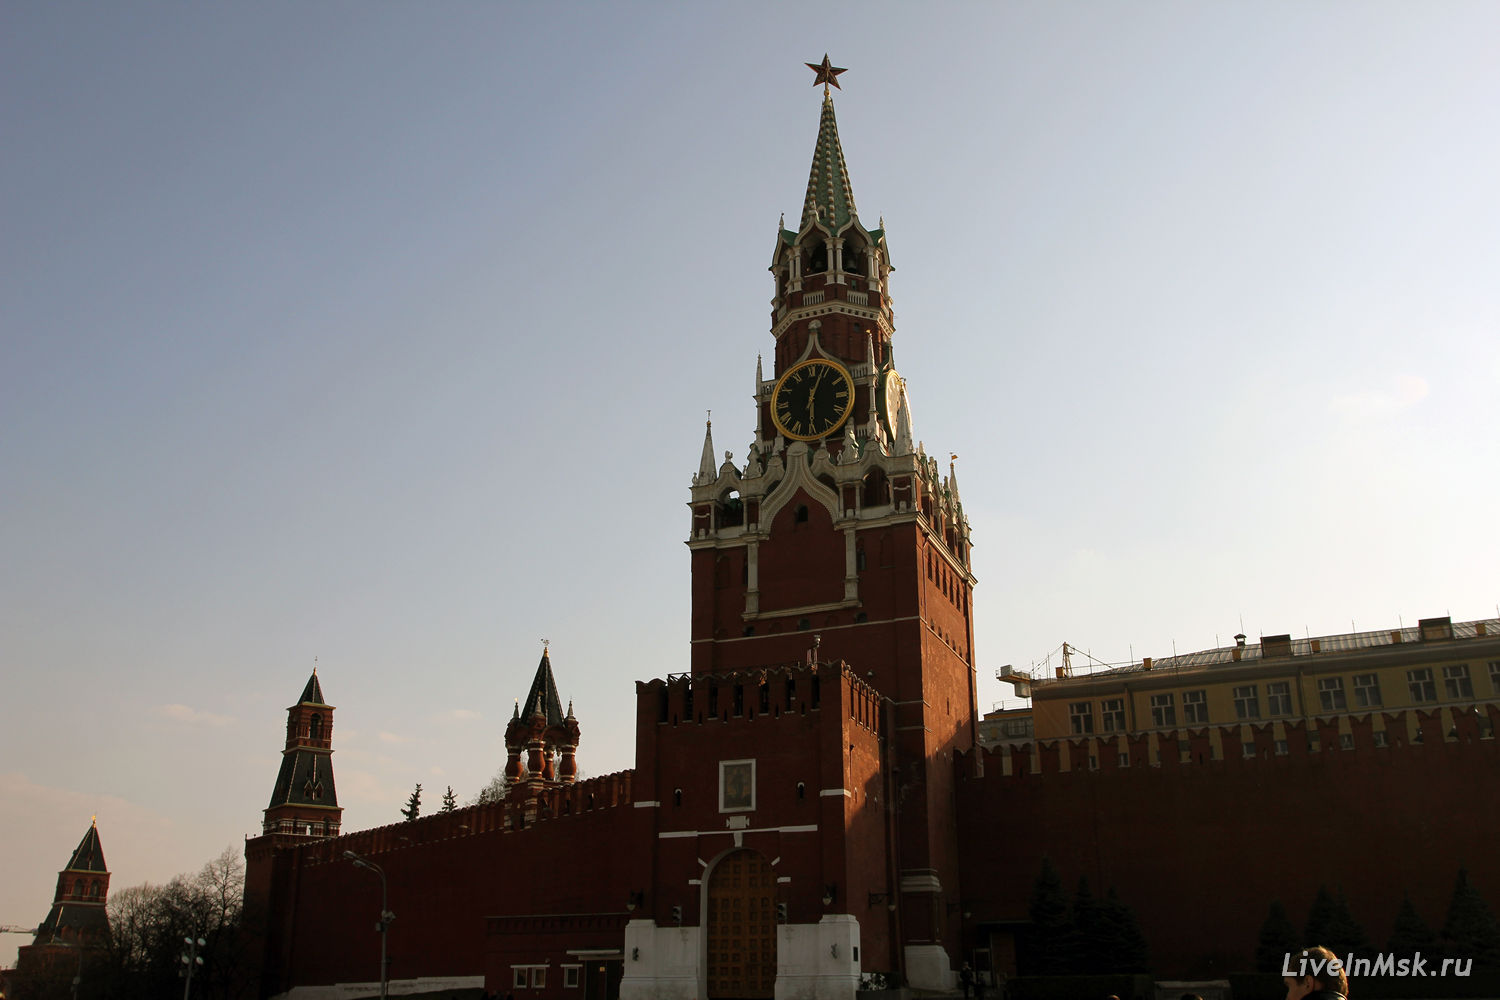 Спасская башня Московского Кремля, фото 2015 года